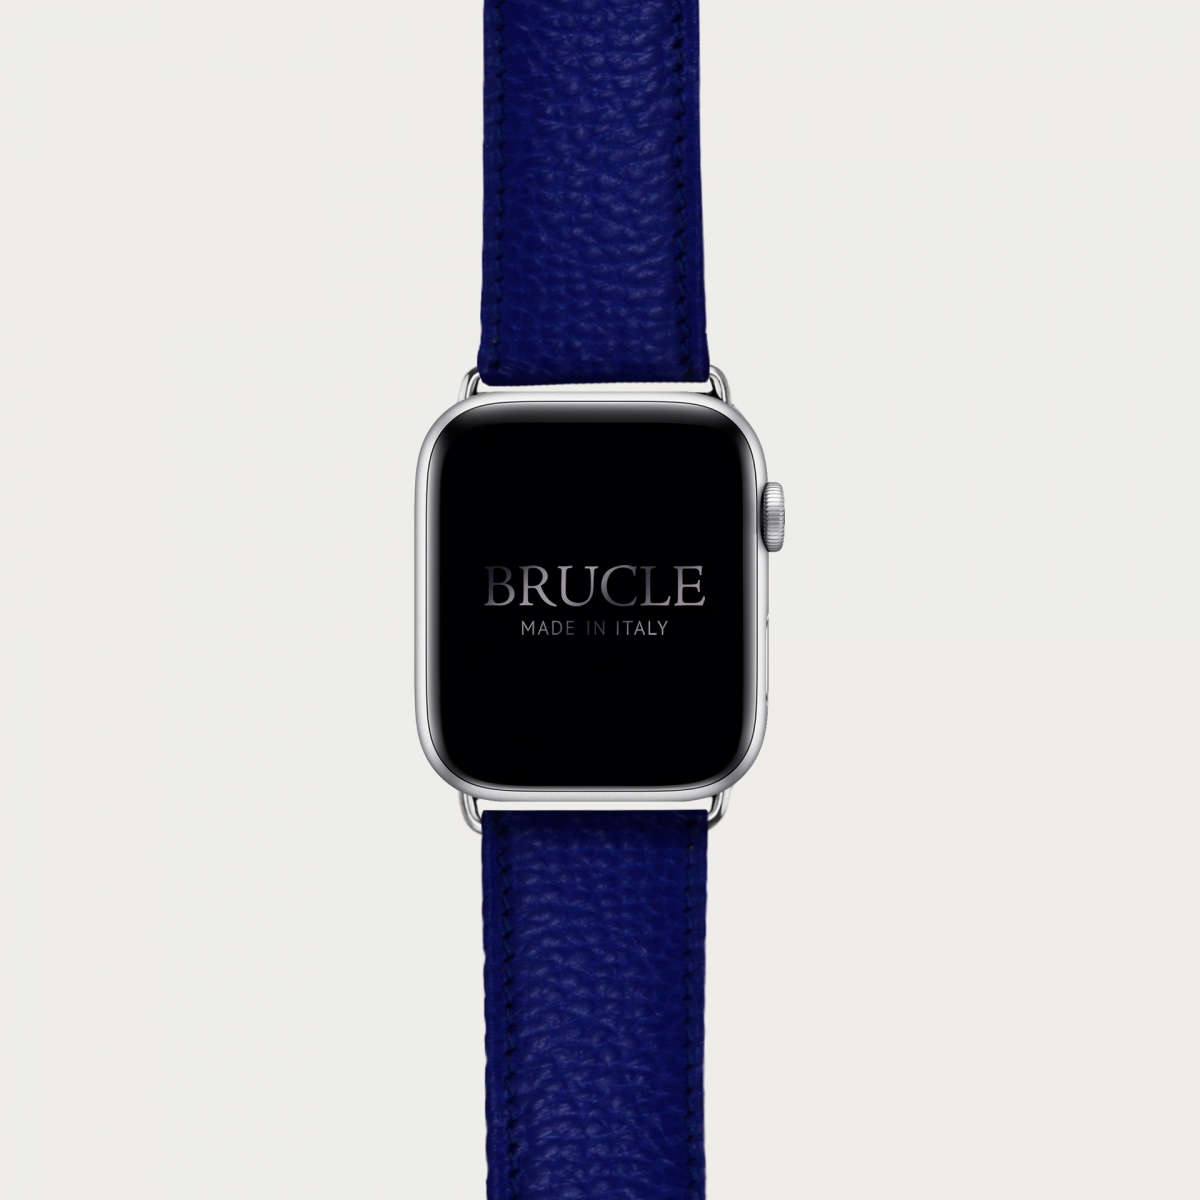 Bracelet en cuir pour montre, Apple Watch et Samsung smartwatch, imprimé royal blue